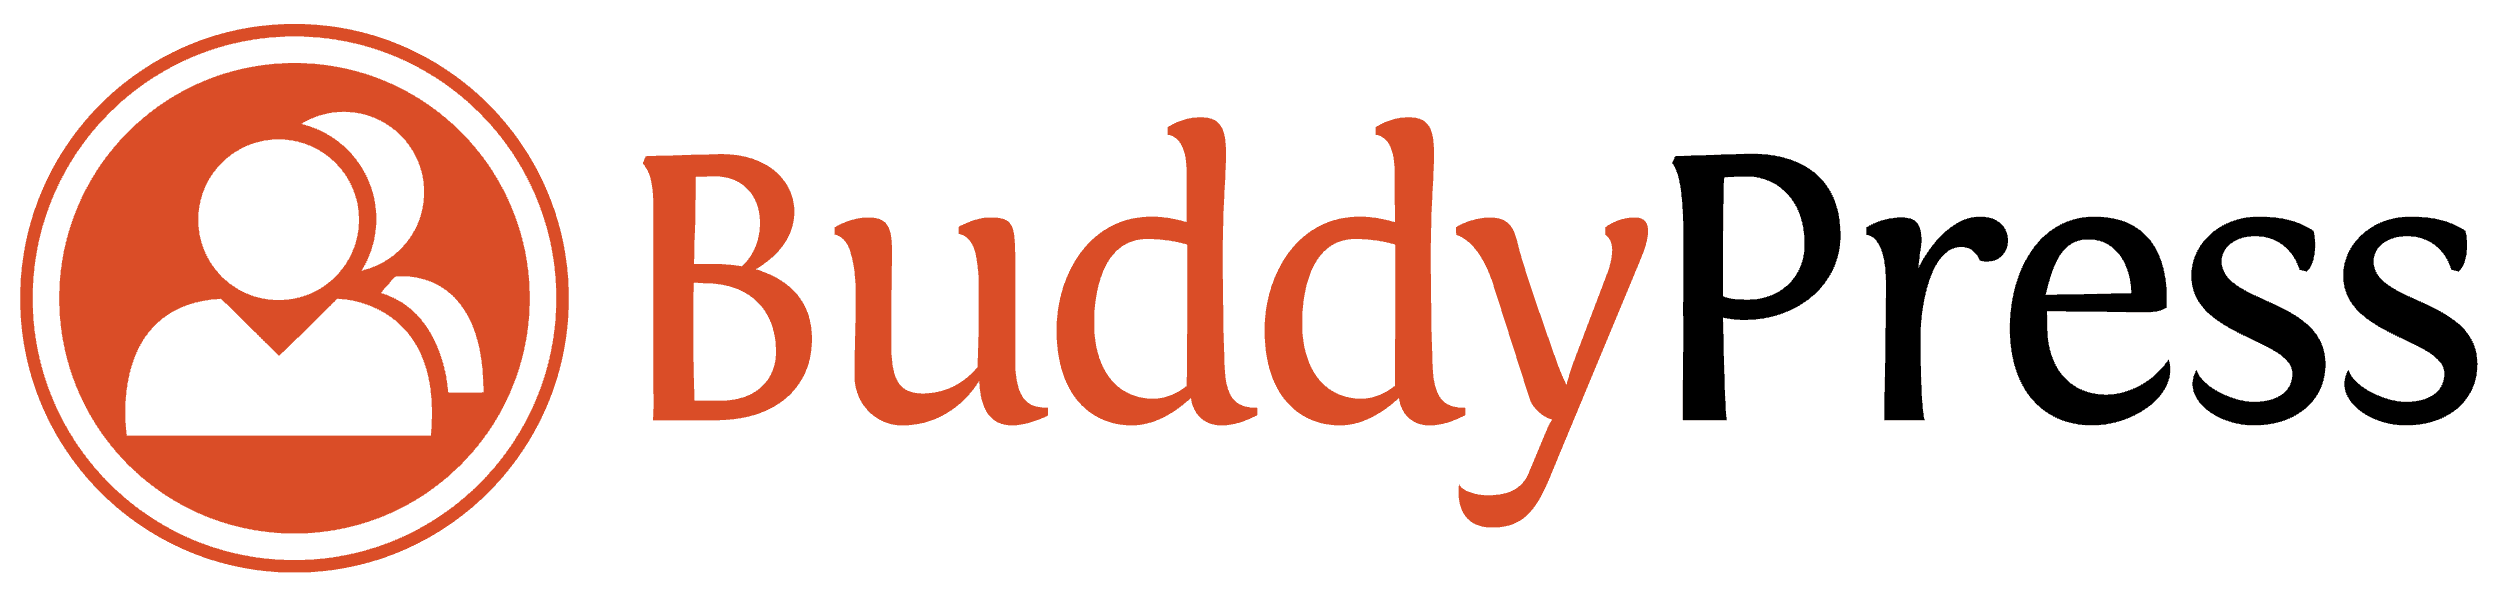 BuddyPress - Sieć społecznościowa dla Wordpress